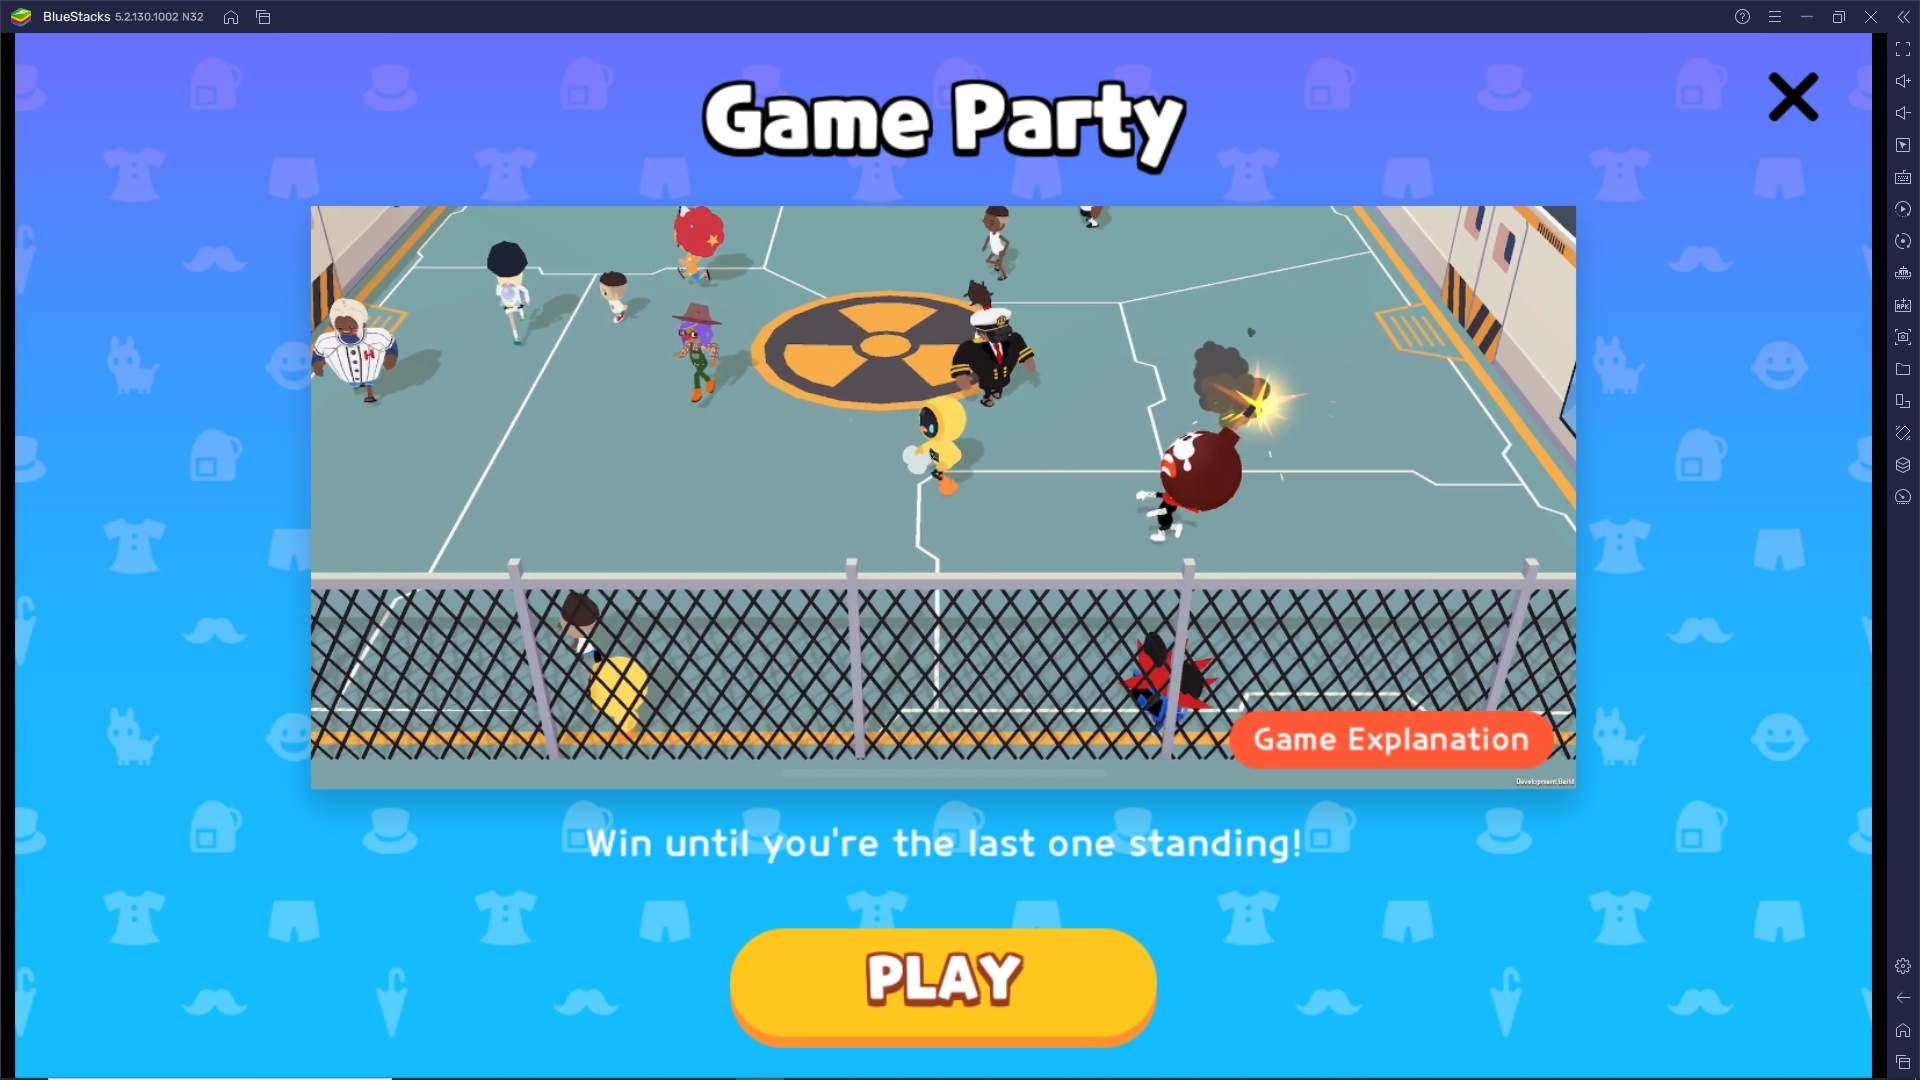 Consigli per affrontare la modalità Game Party di Play Together